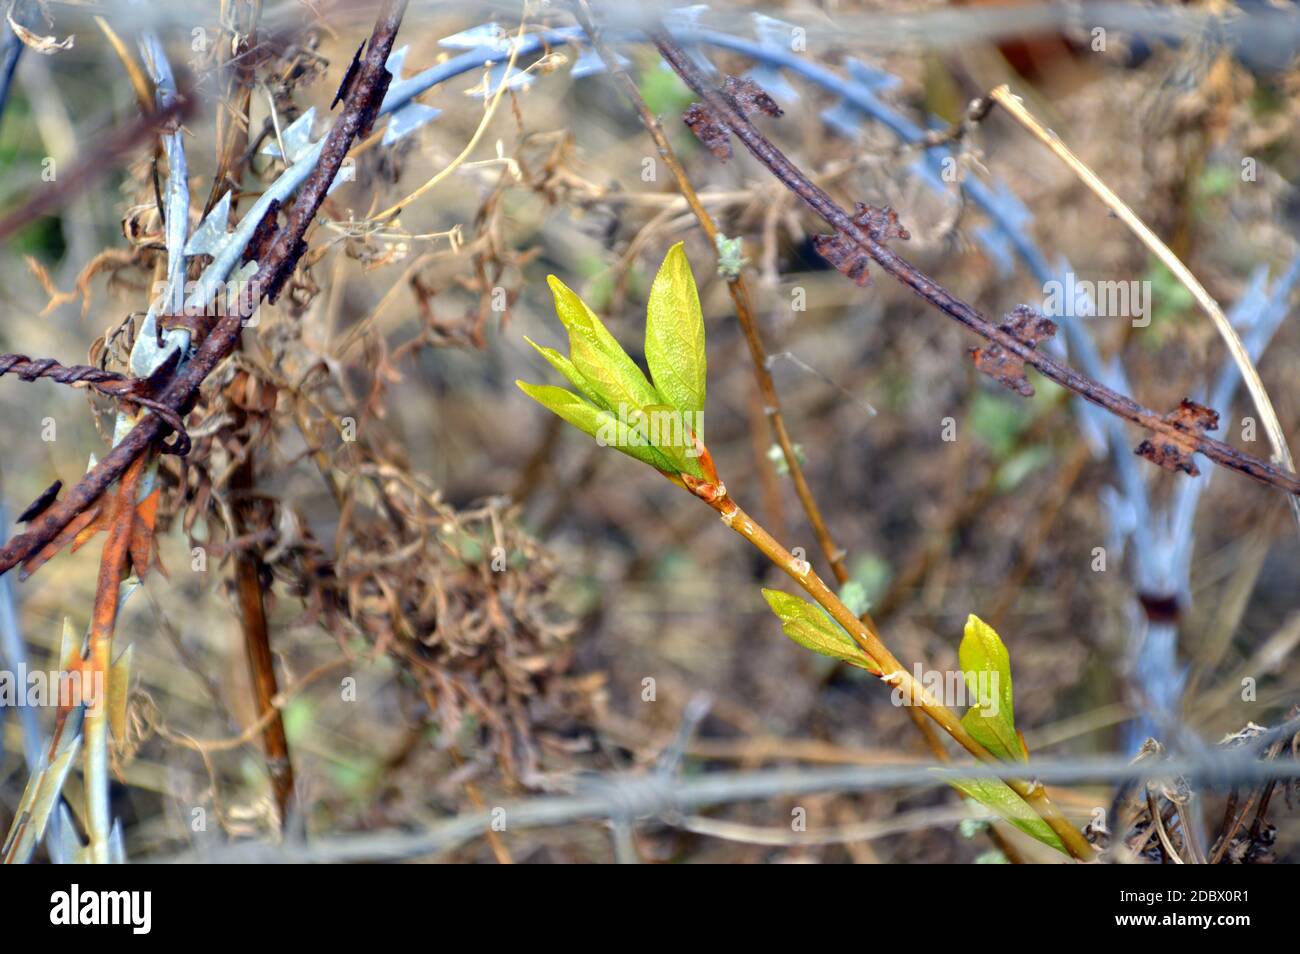 Concept des effets nocifs de l'activité humaine sur l'environnement: Branche d'arbre avec feuilles vertes fraîches entourées d'une clôture barbelée Banque D'Images